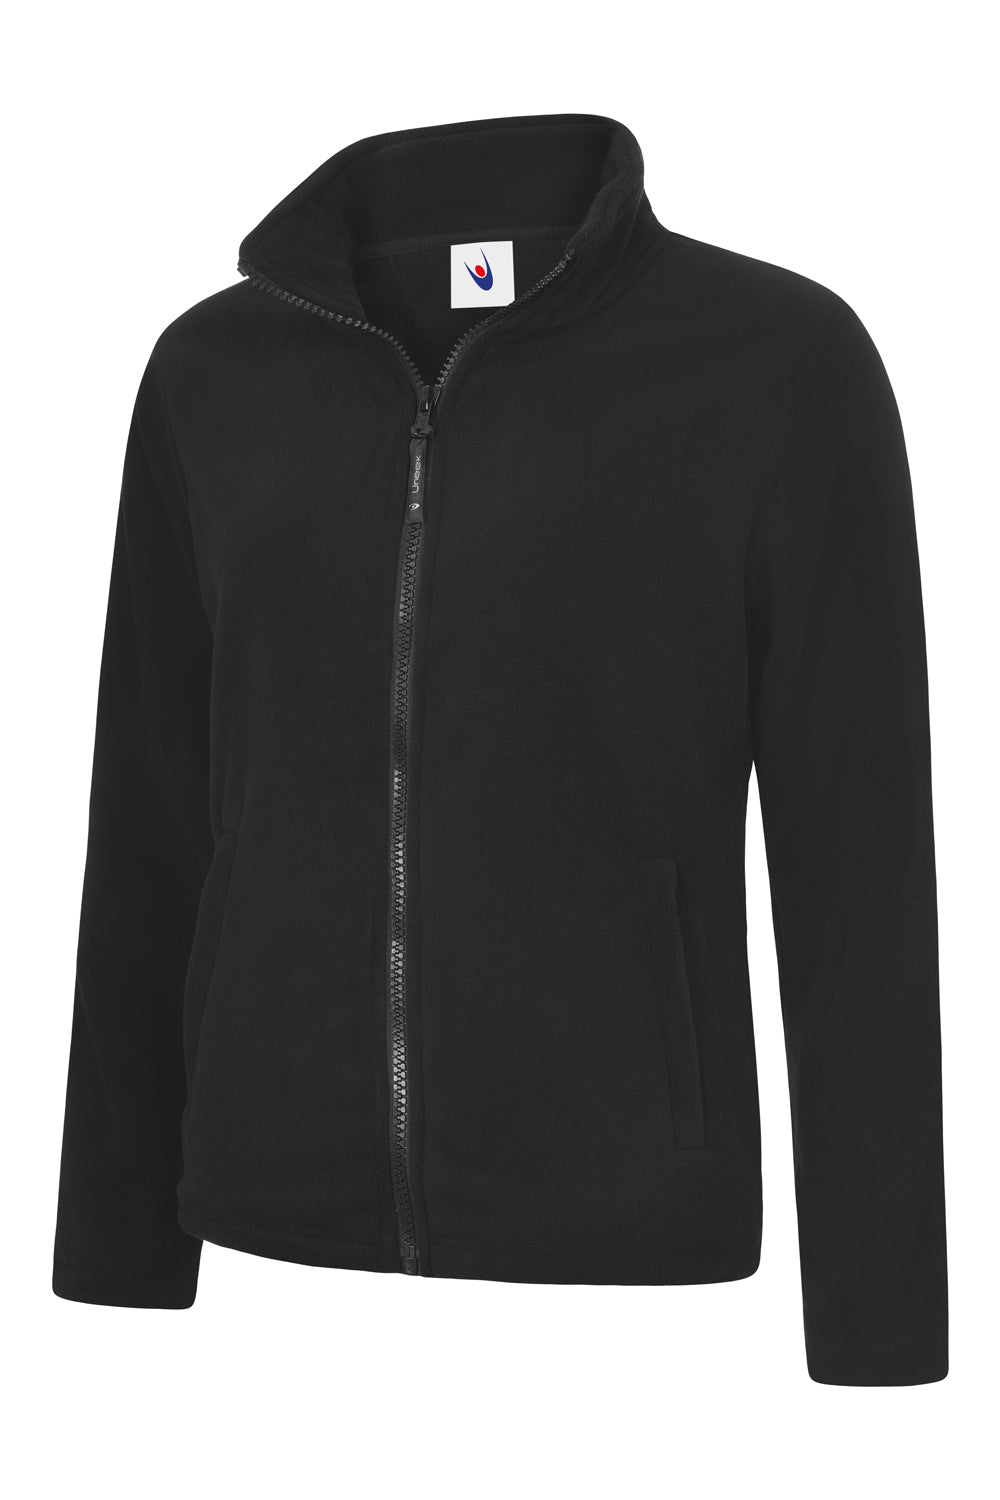 Uneek Ladies Classic Full Zip Fleece Jacket UC608 - Black